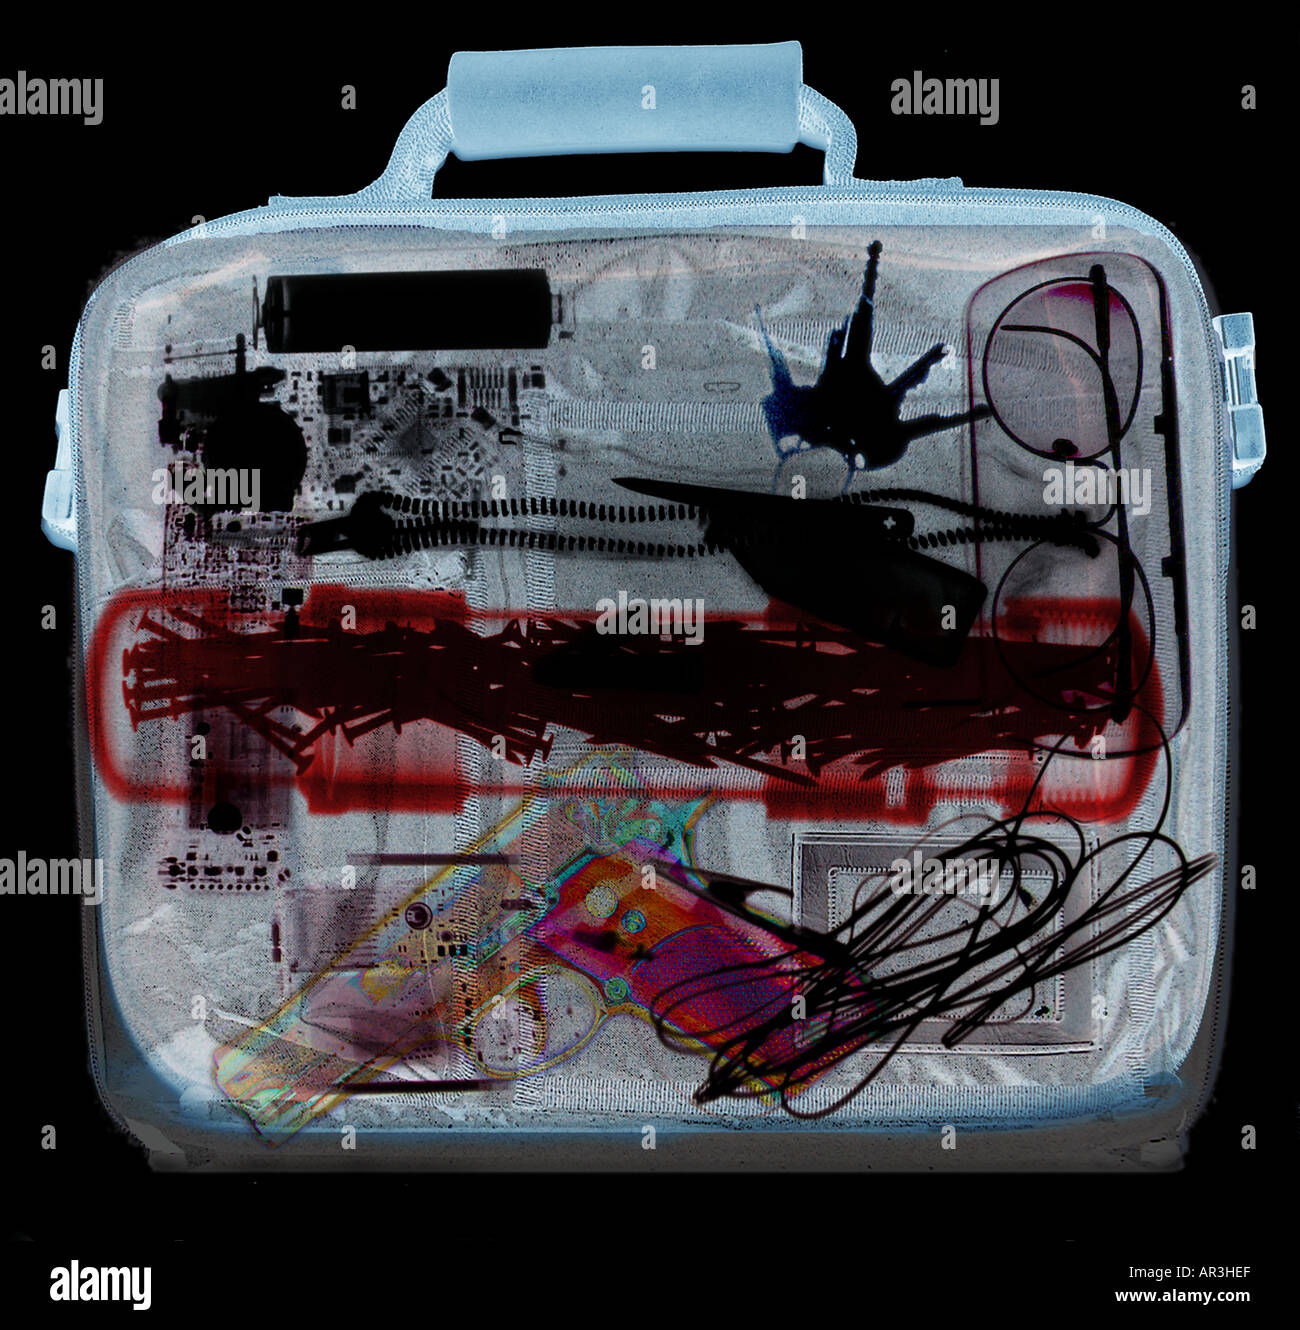 Simulazione di controlli di sicurezza in aeroporto a raggi X che mostra una valigetta contenente una Smith e Wesson 9mm pistola Foto Stock